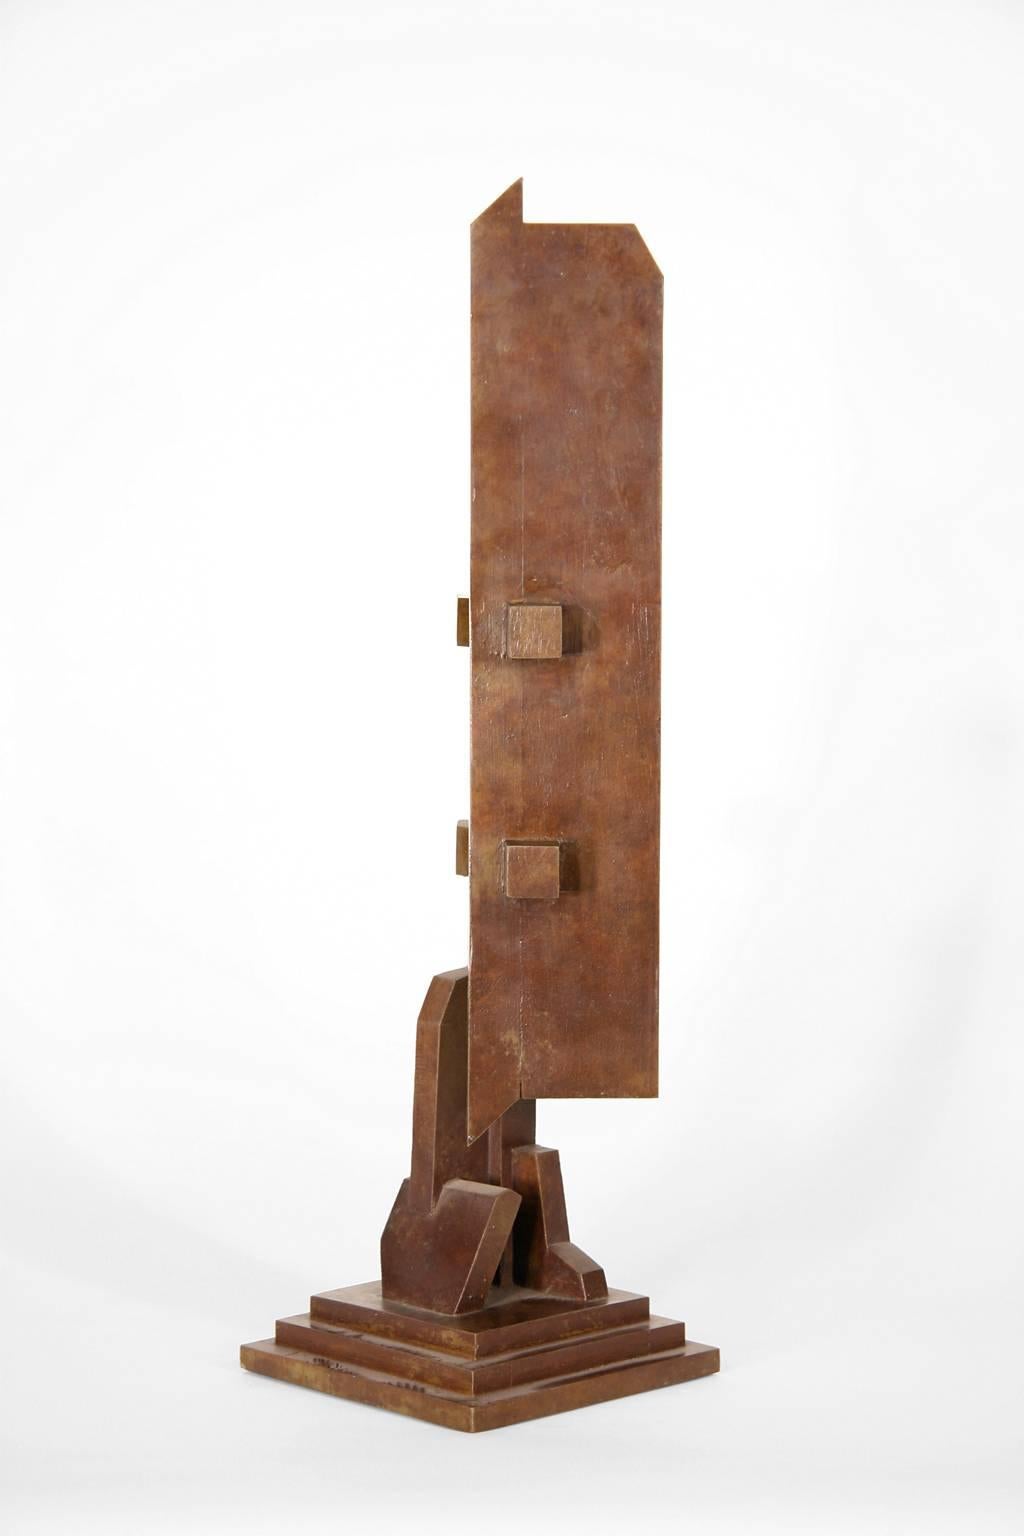 „1099“, Richard Heinrich, Abstrakte zeitgenössische Bronzeskulptur, Metall